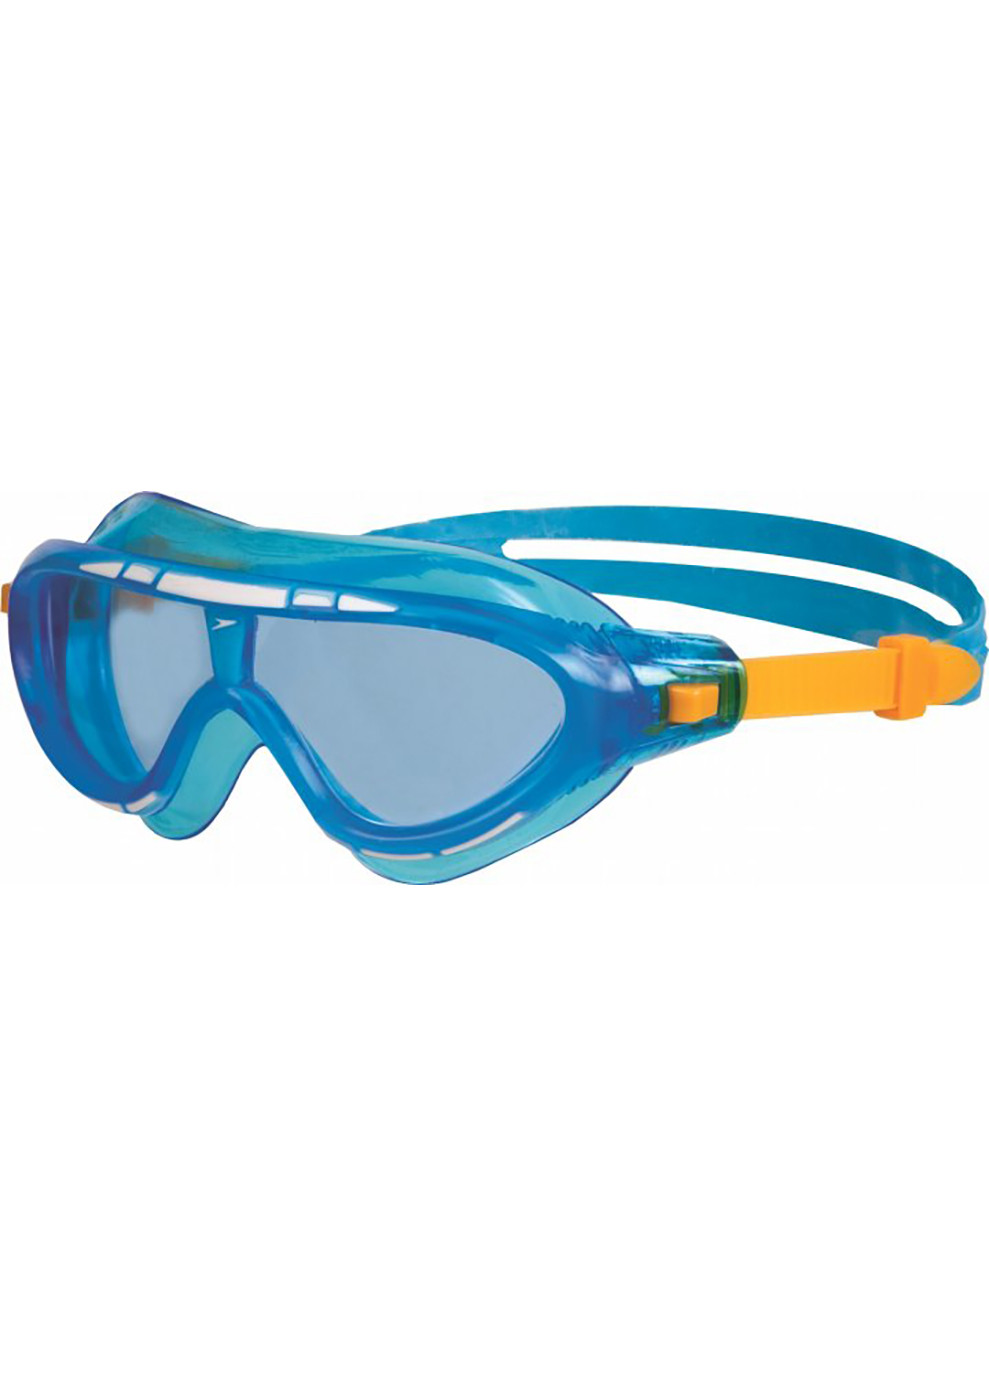 Очки для плавания RIFT GOG JU ASSORTED(8-01213C102-1) голубой дет ONESZ(5153744337101) Speedo (254342527)